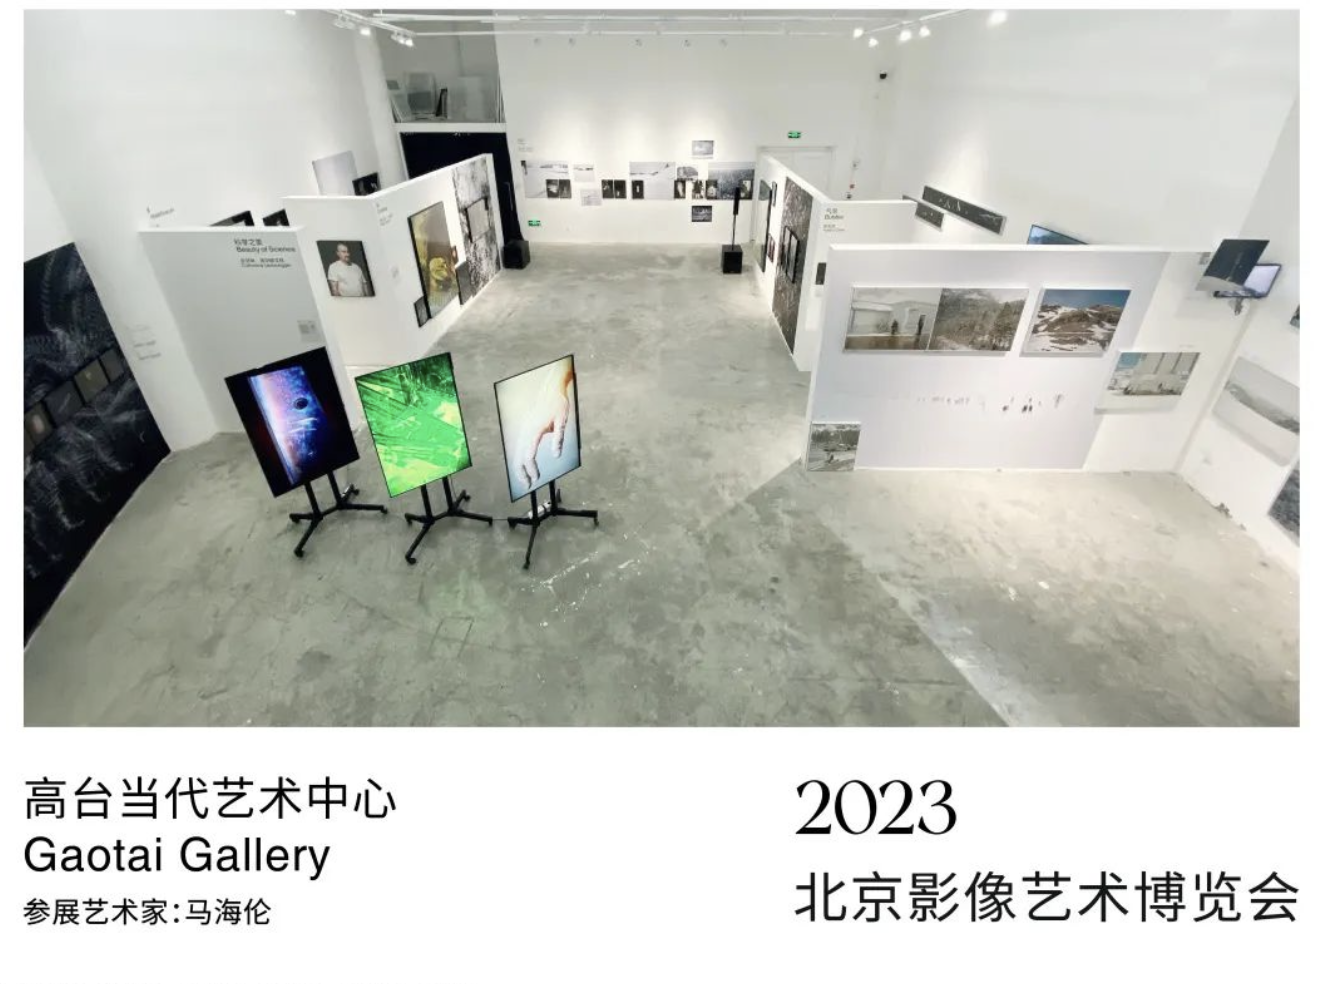 2023 JINGPHOTO Invitation Exhibition | Gaotai Gallery